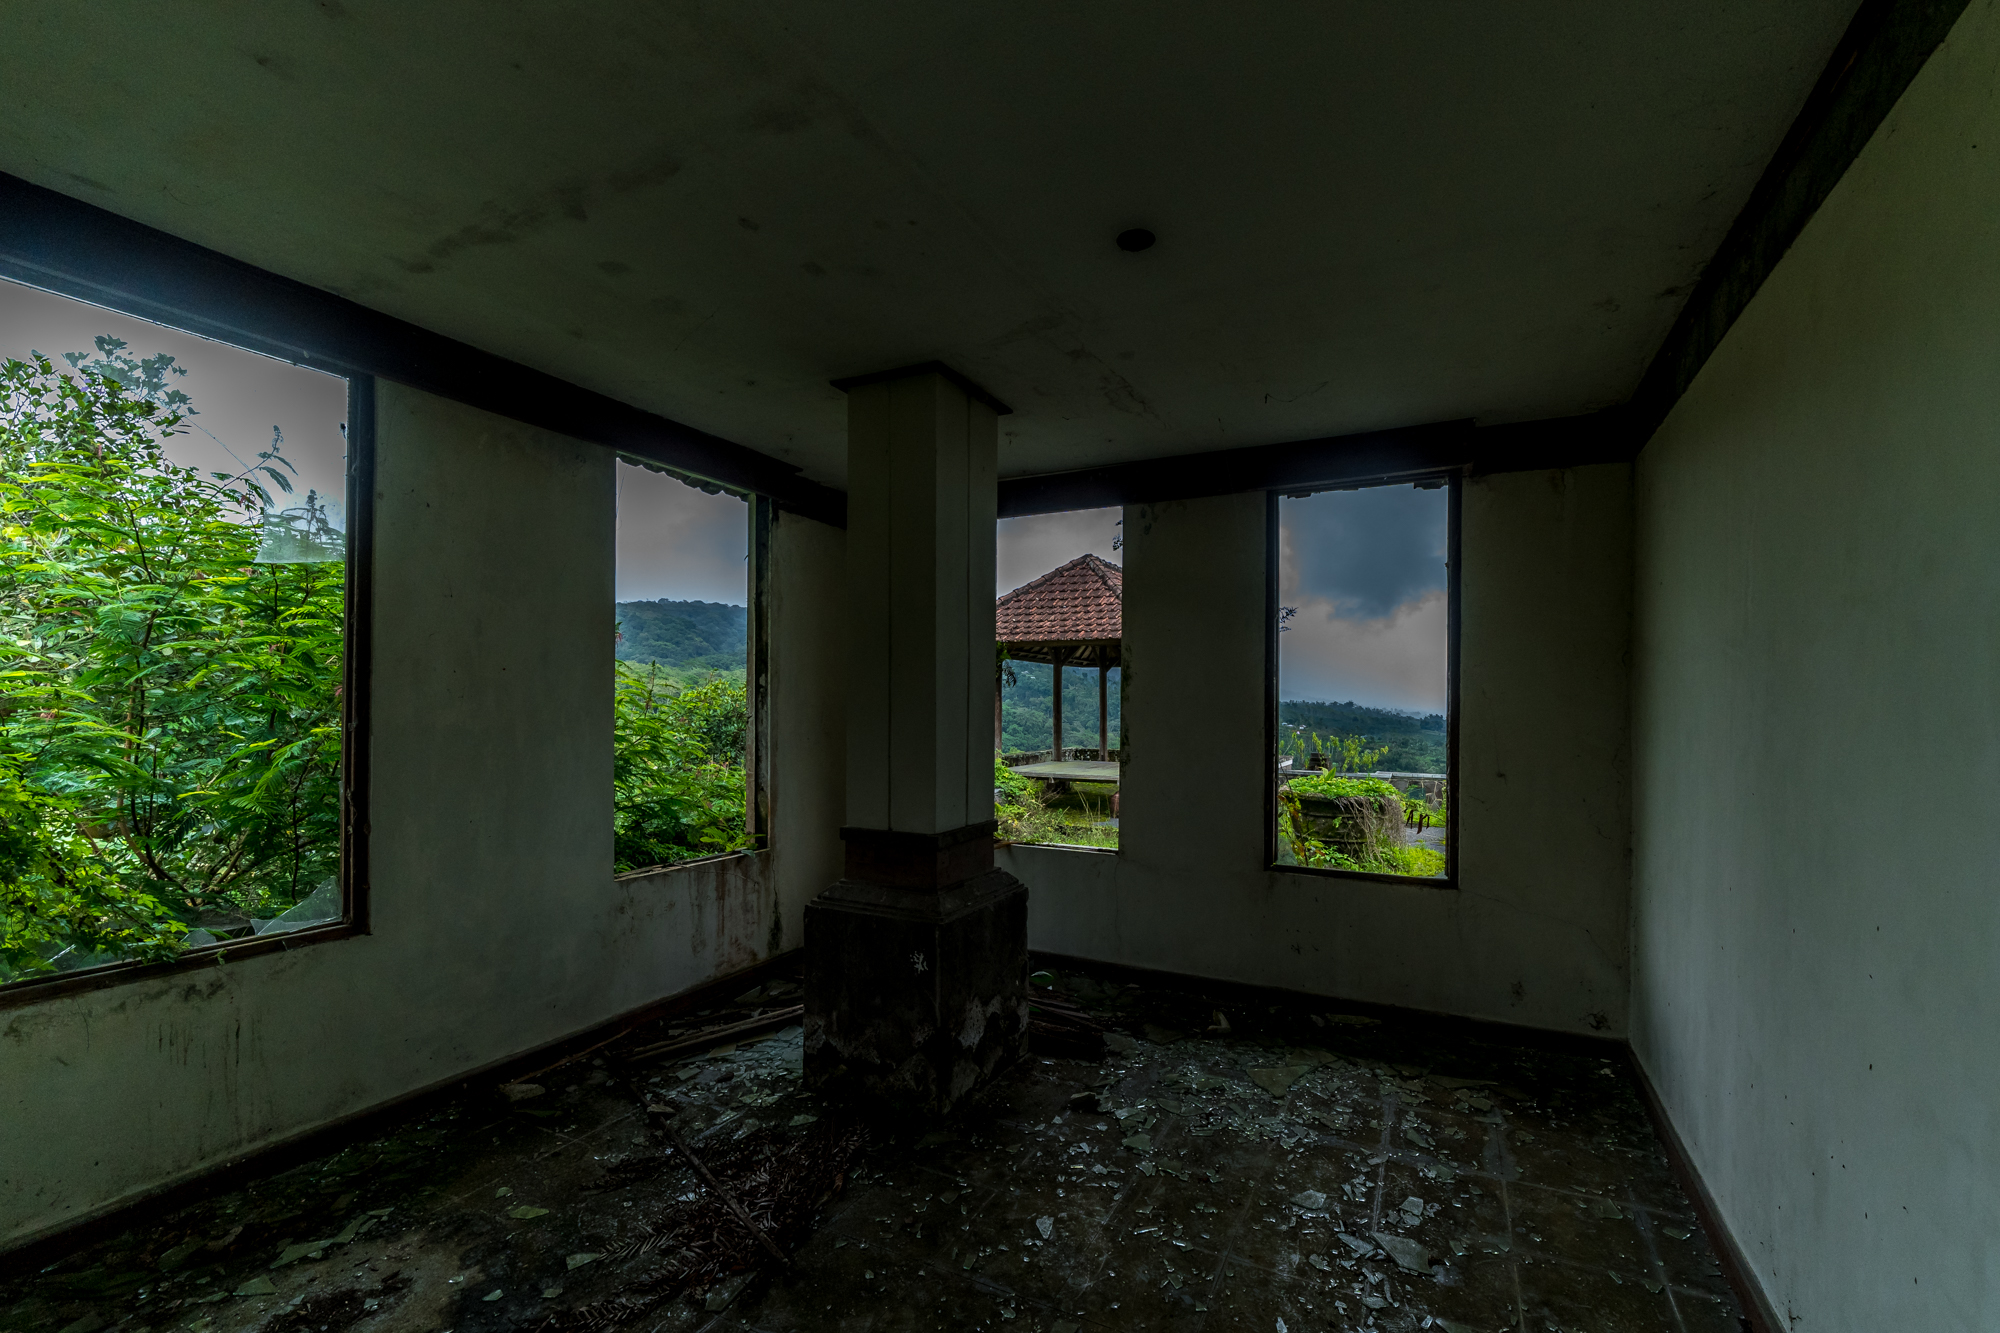 Посещение отеля-призрака на острове Бали